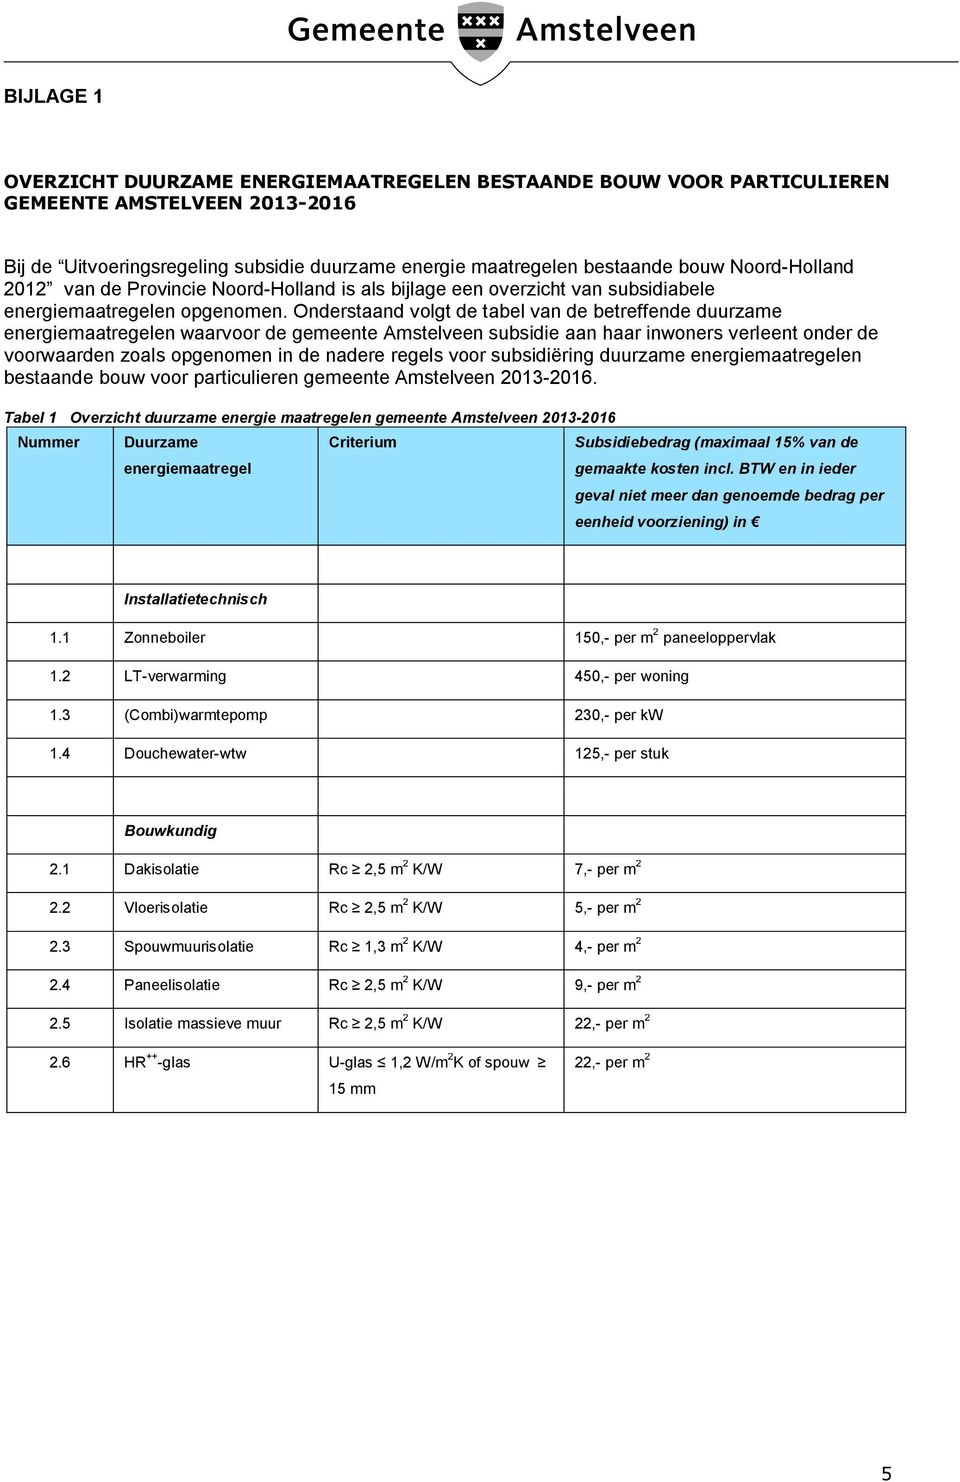 Onderstaand volgt de tabel van de betreffende duurzame energiemaatregelen waarvoor de gemeente Amstelveen subsidie aan haar inwoners verleent onder de voorwaarden zoals opgenomen in de nadere regels